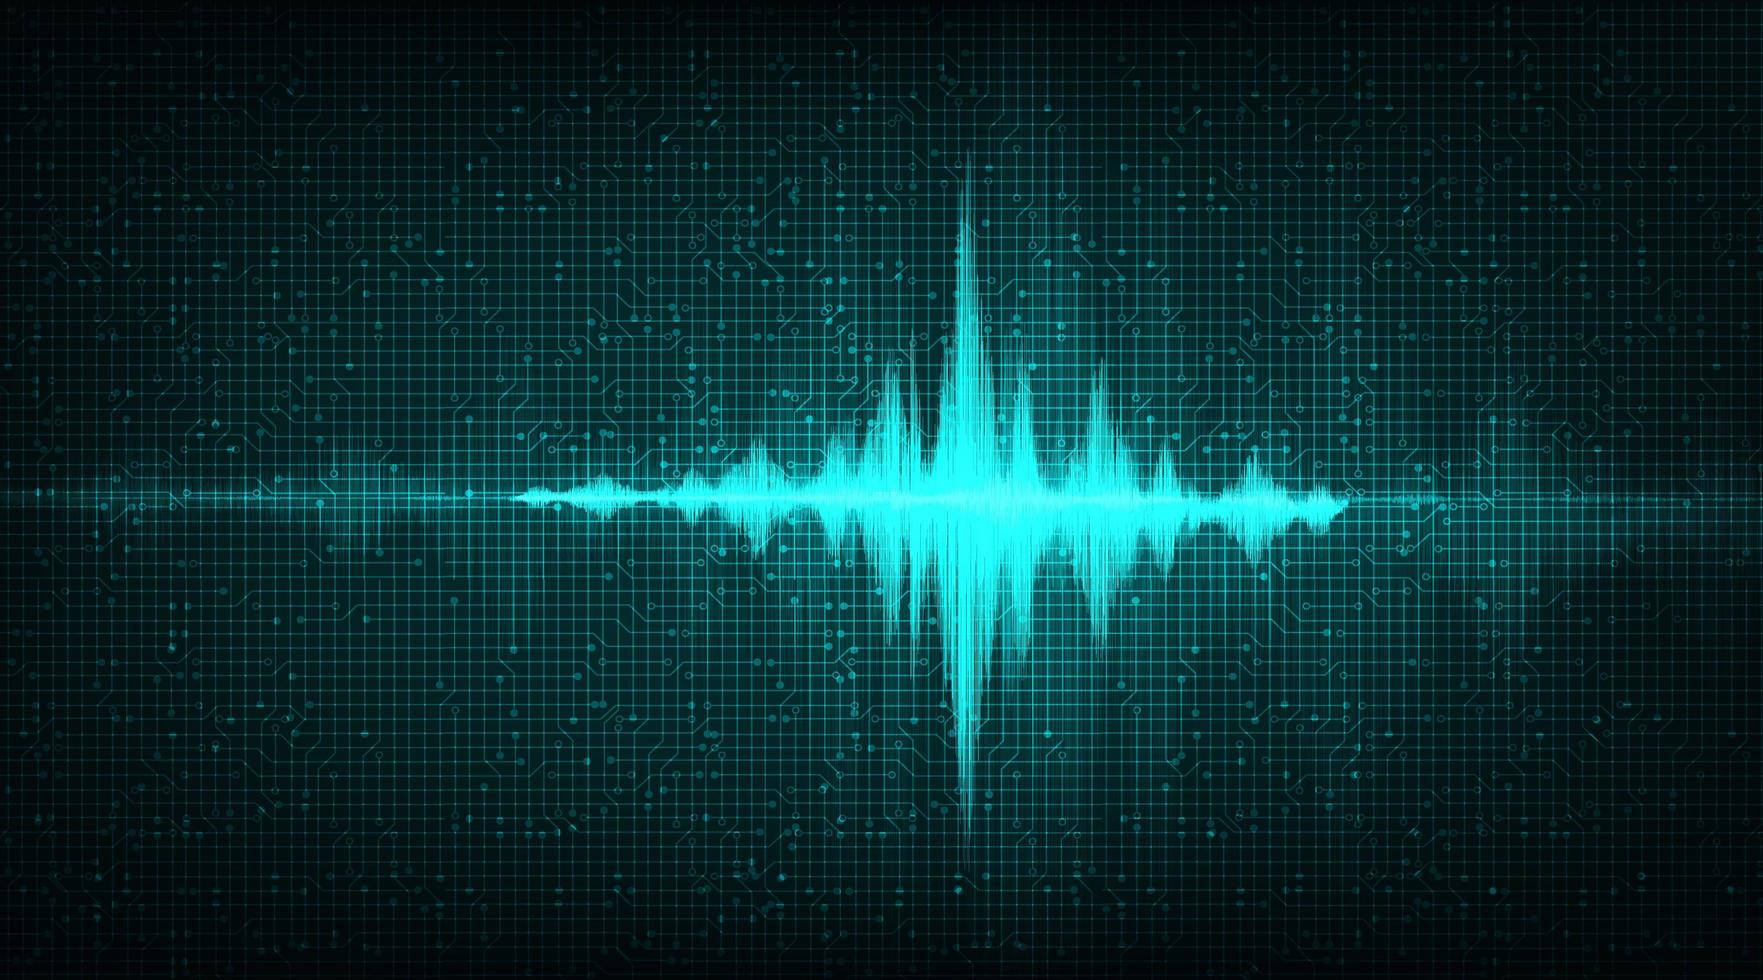 digital ljudvåg på mörkgrön bakgrund, teknik och jordbävningsvågdiagramkoncept, design för musikstudio och vetenskap, vektorillustration. vektor